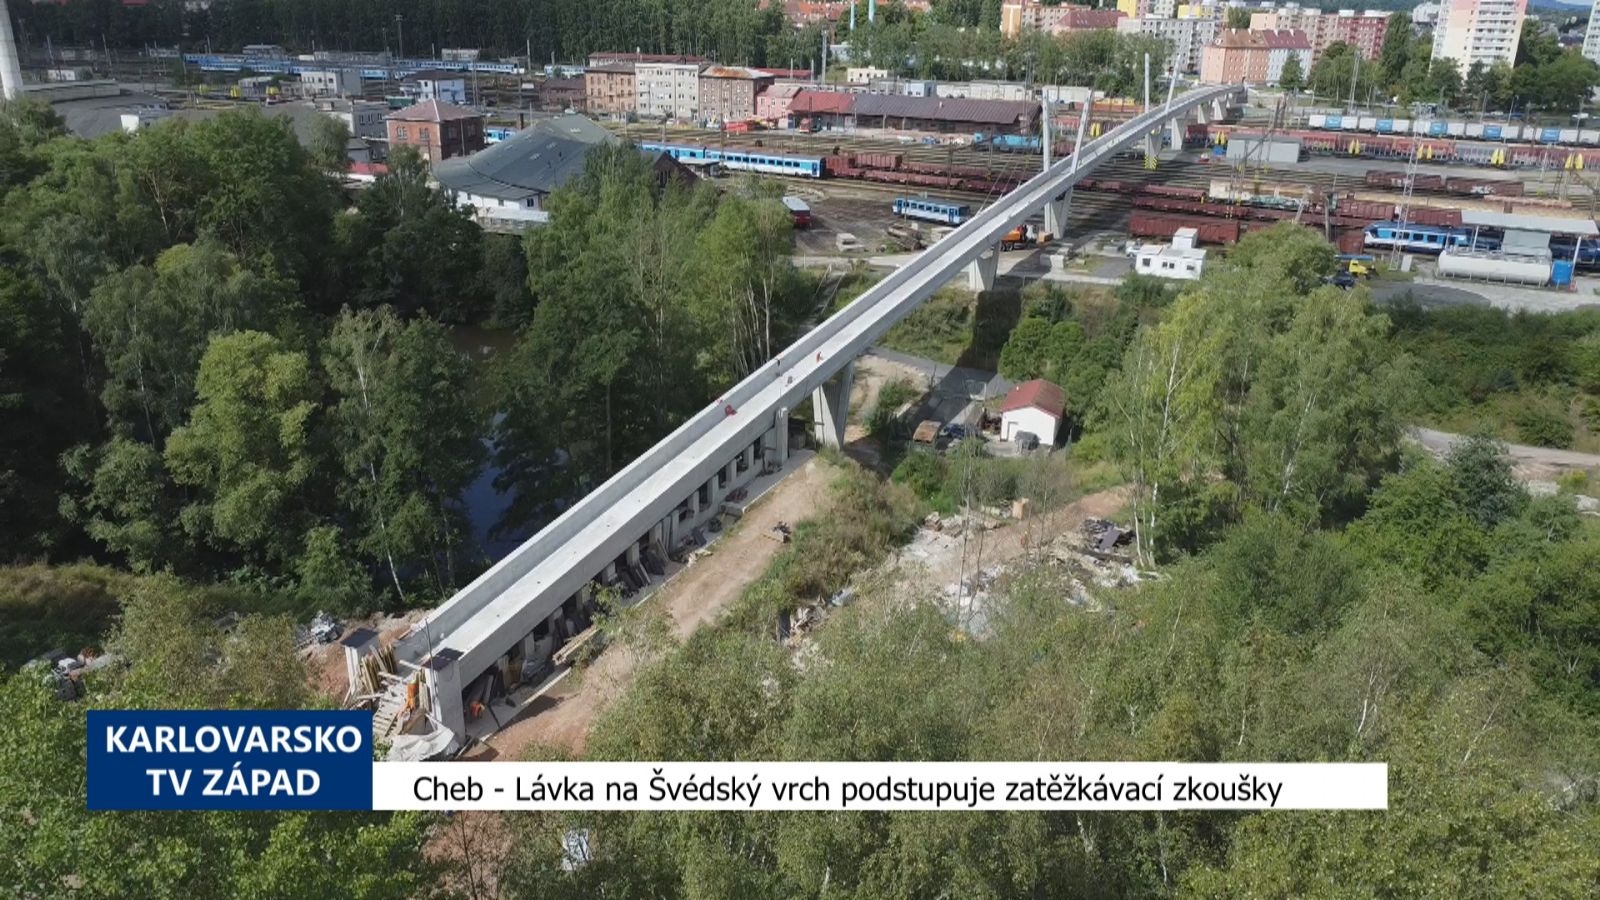 Cheb: Lávka na Švédský vrch podstupuje zatěžkávací zkoušky (TV Západ)